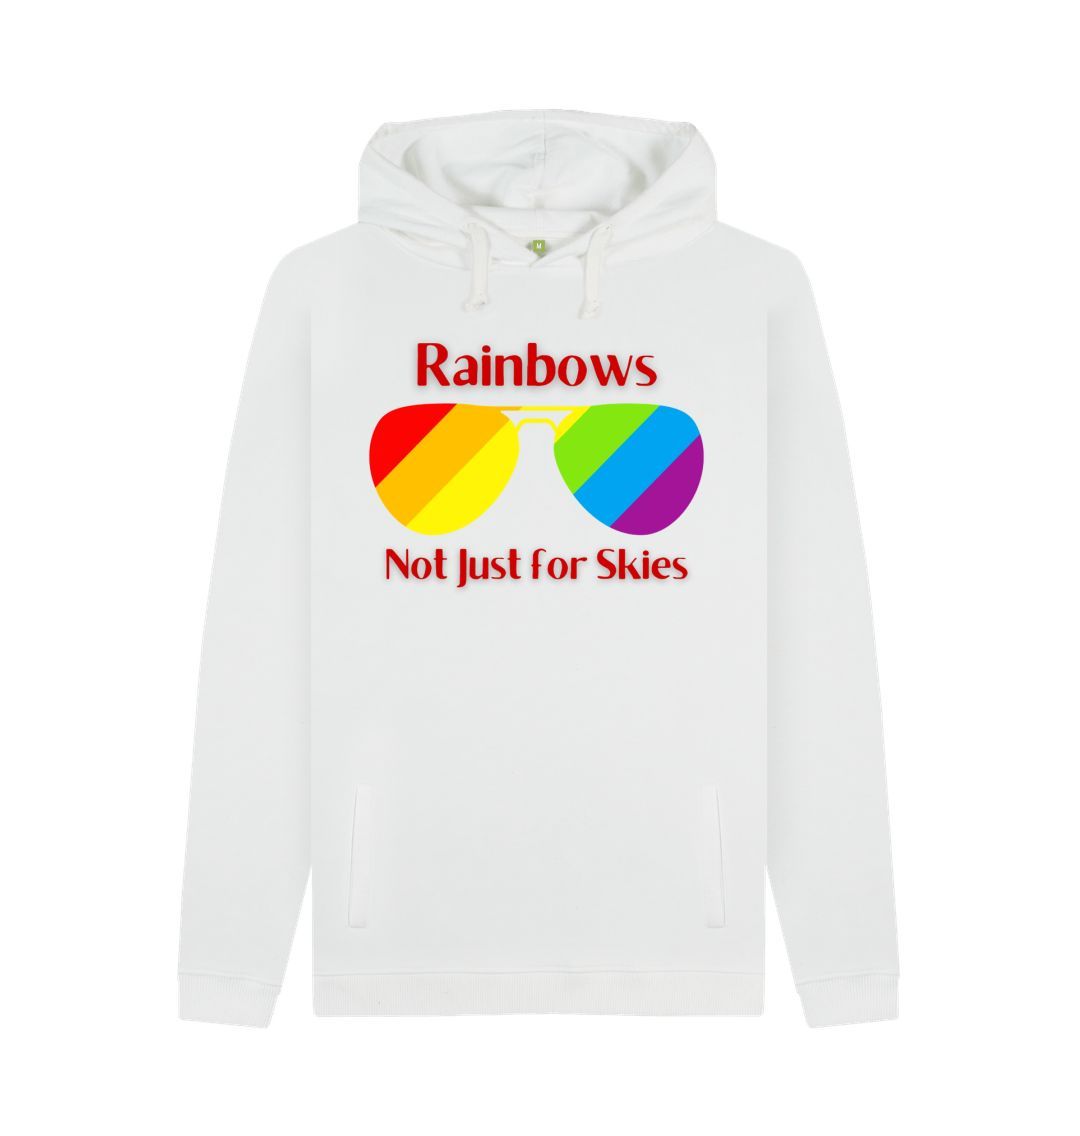 Rainbows not just for skies - Men's Pullover Hoodie